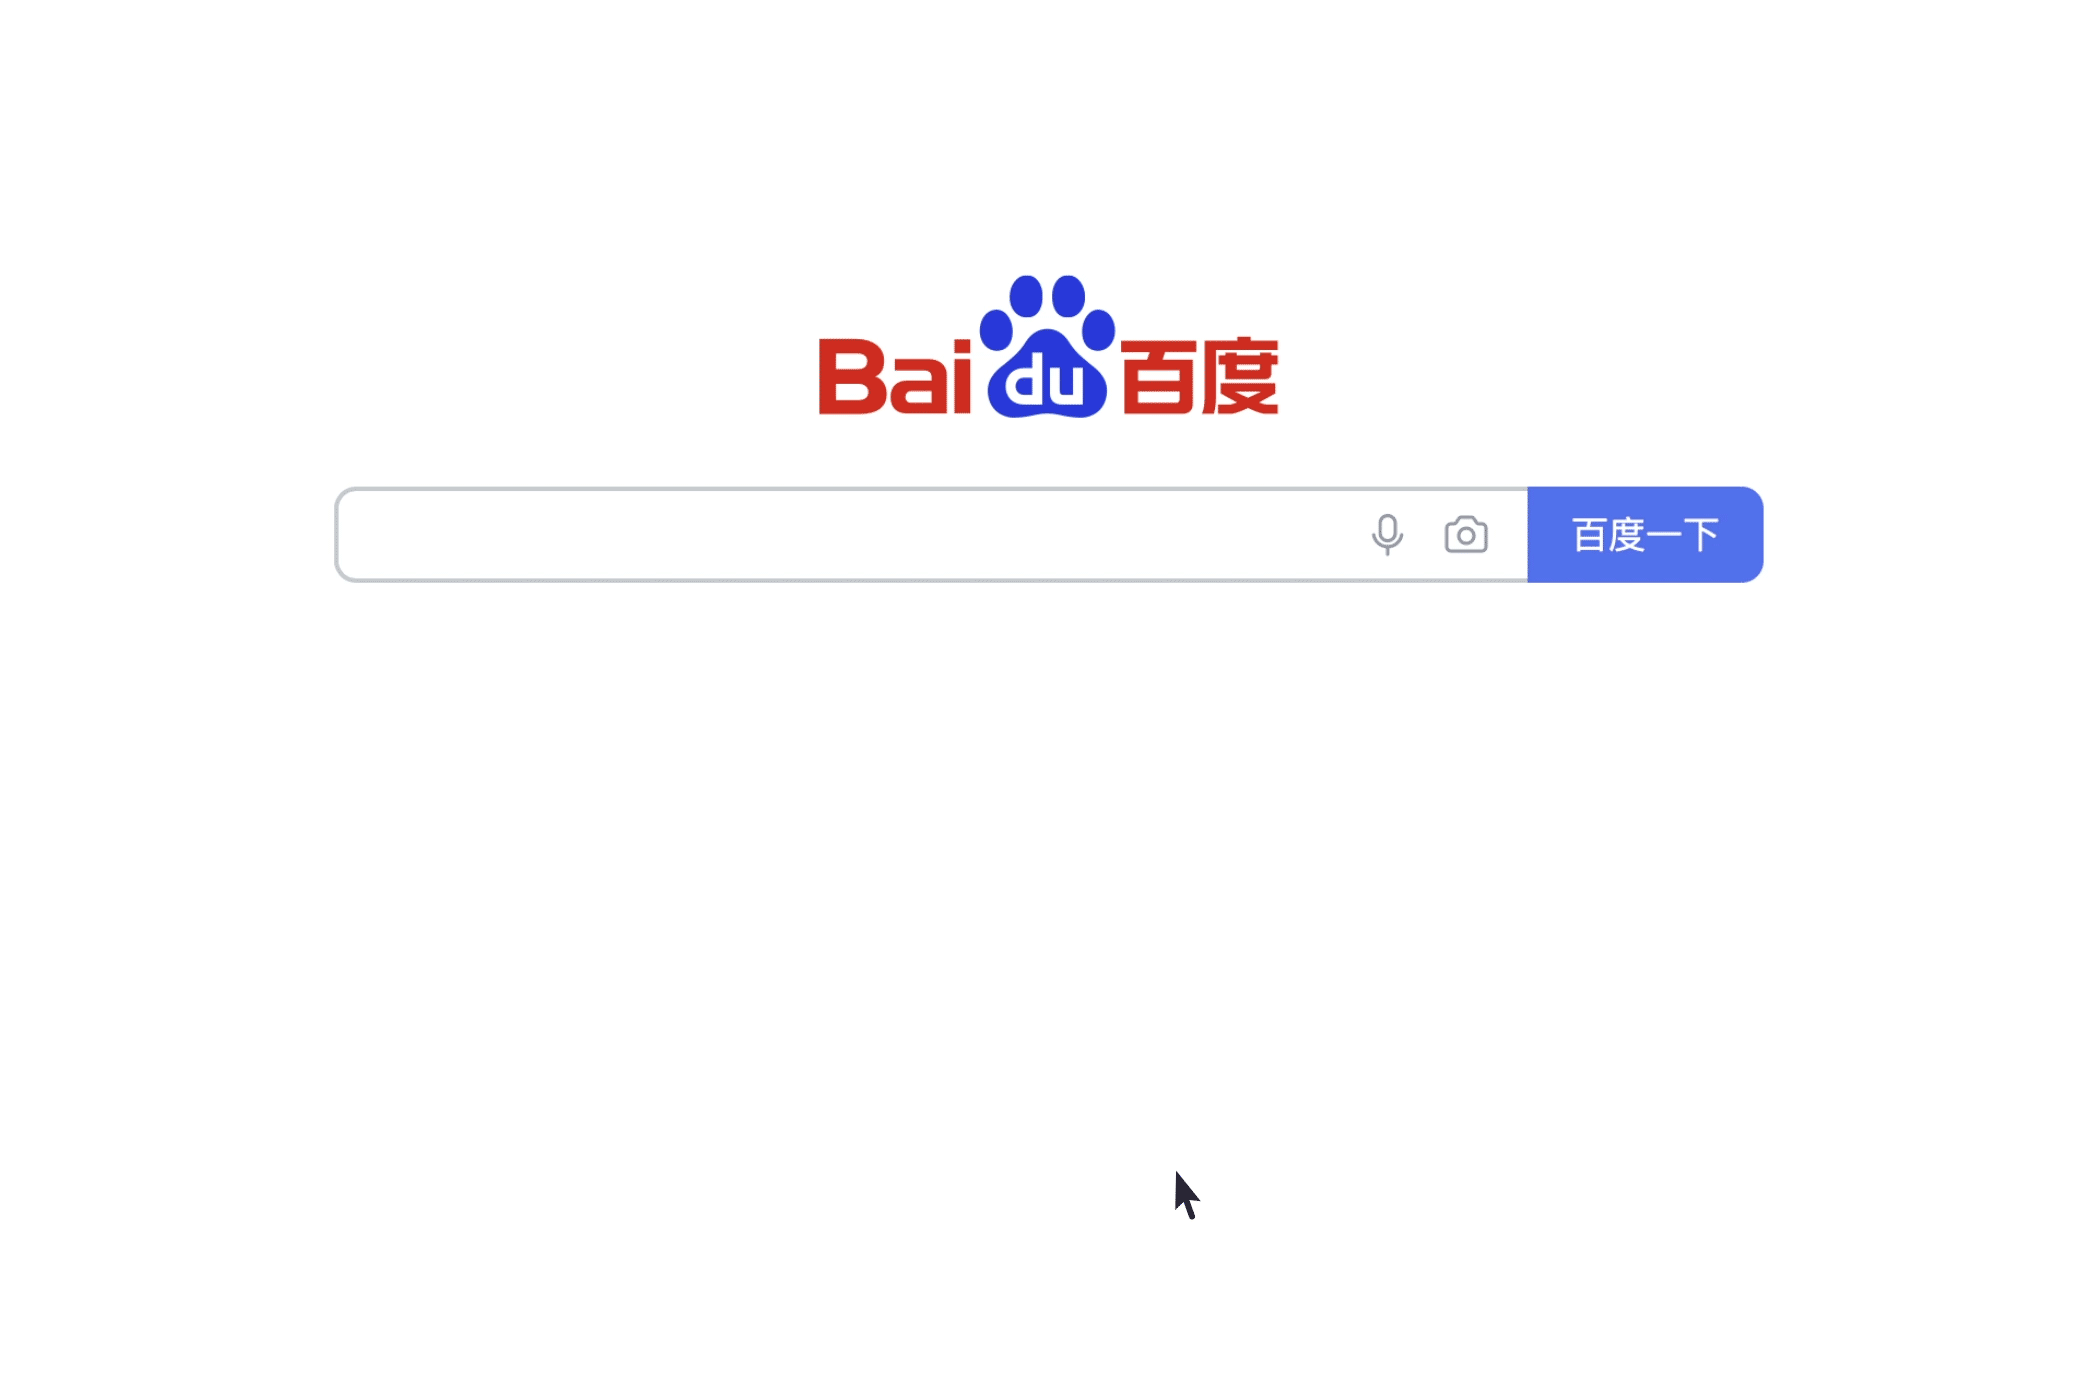 www.baidu.com
